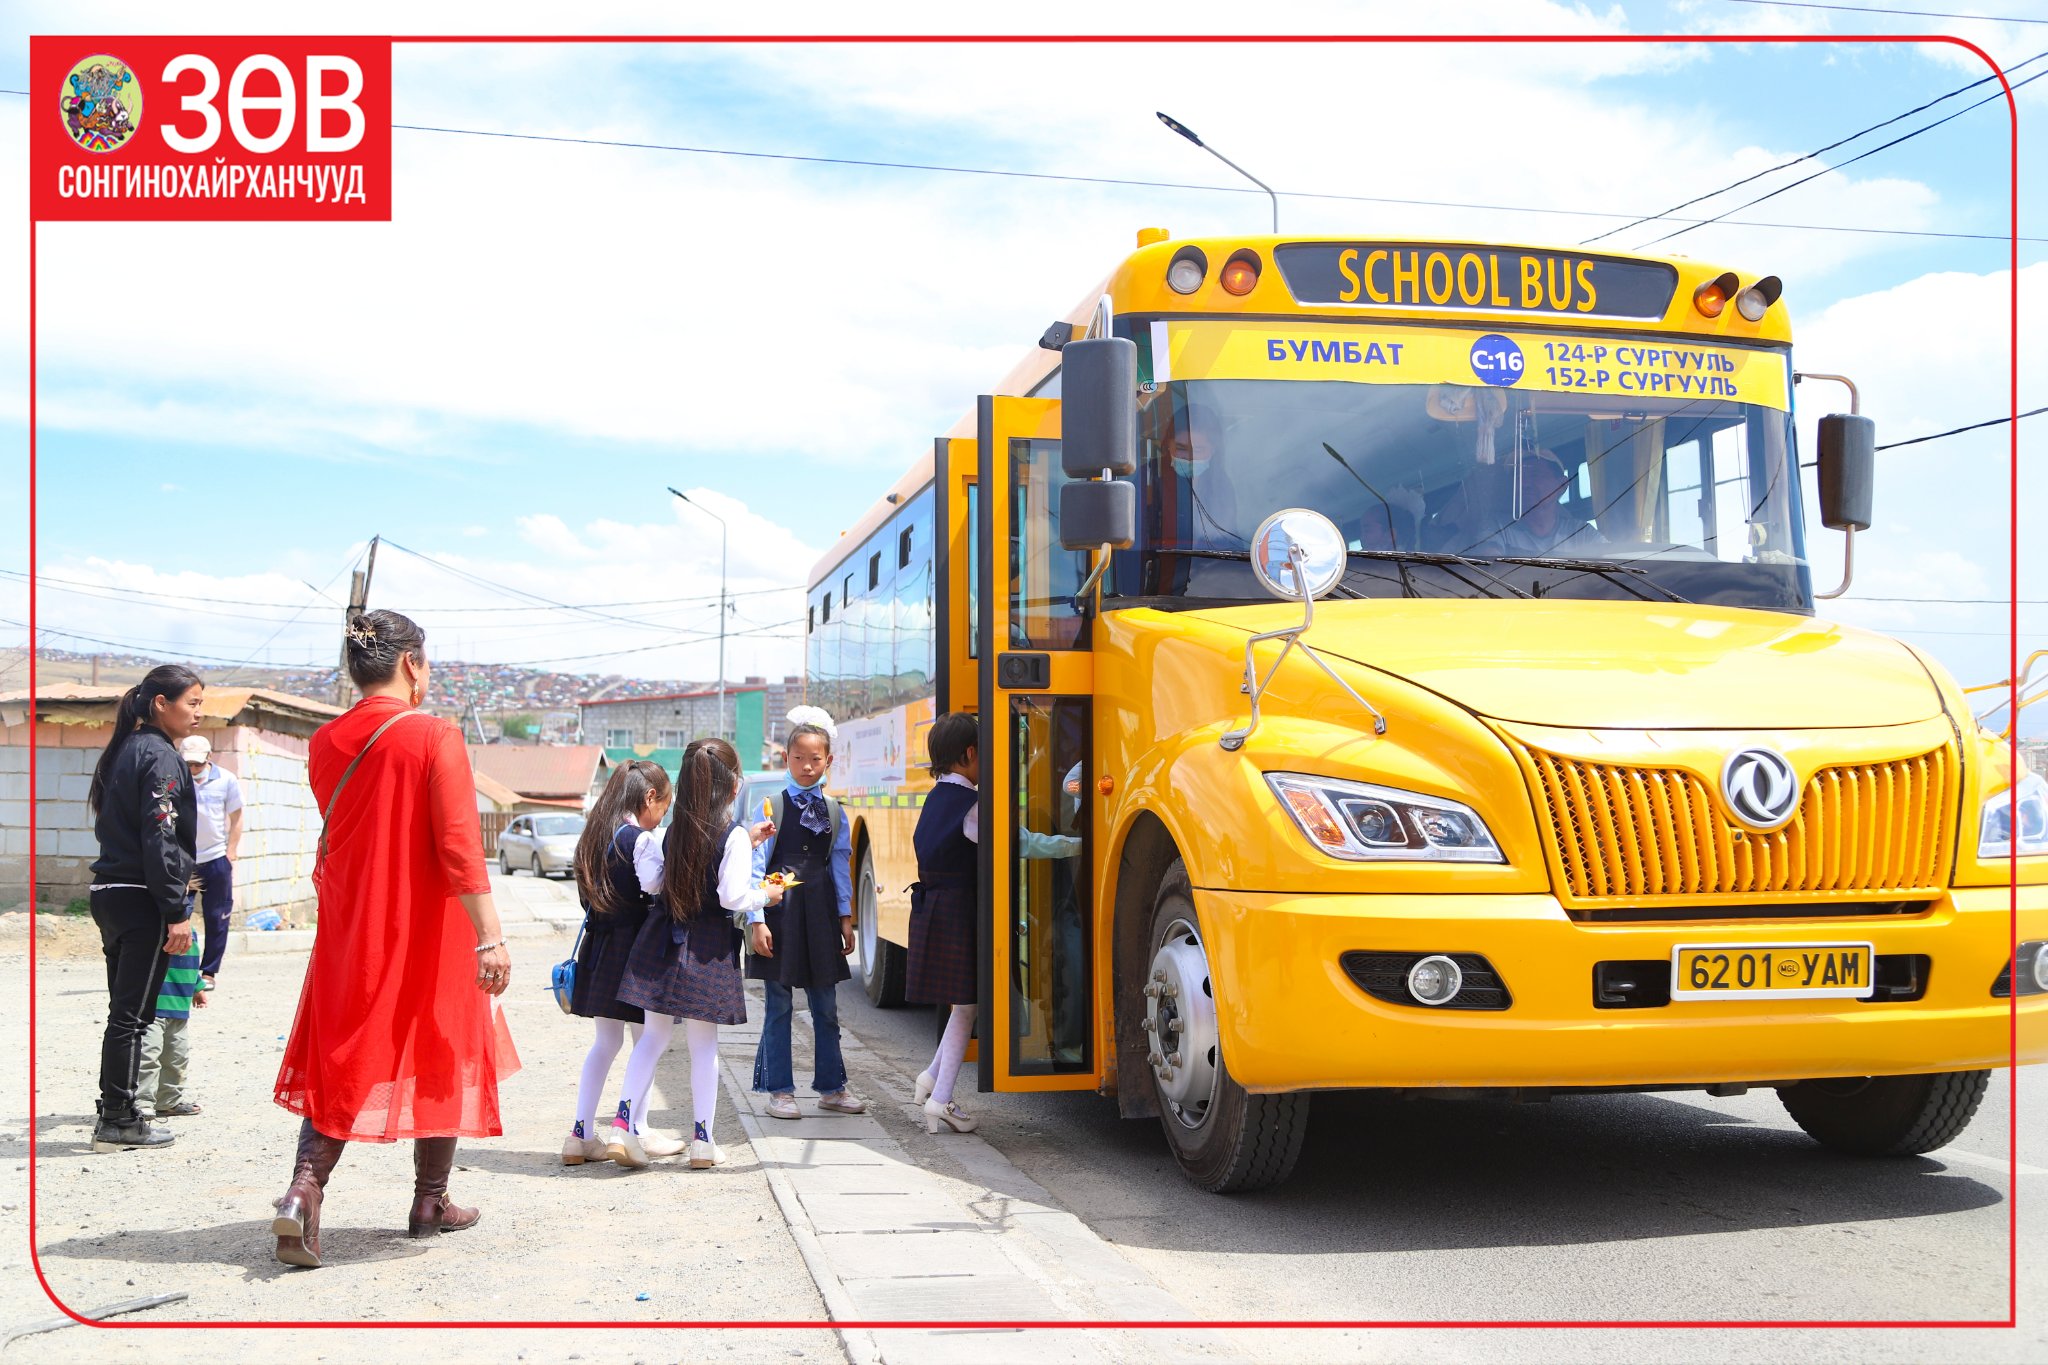 Сургуулийн автобусаар өдөрт 600 сурагчид зорчдог